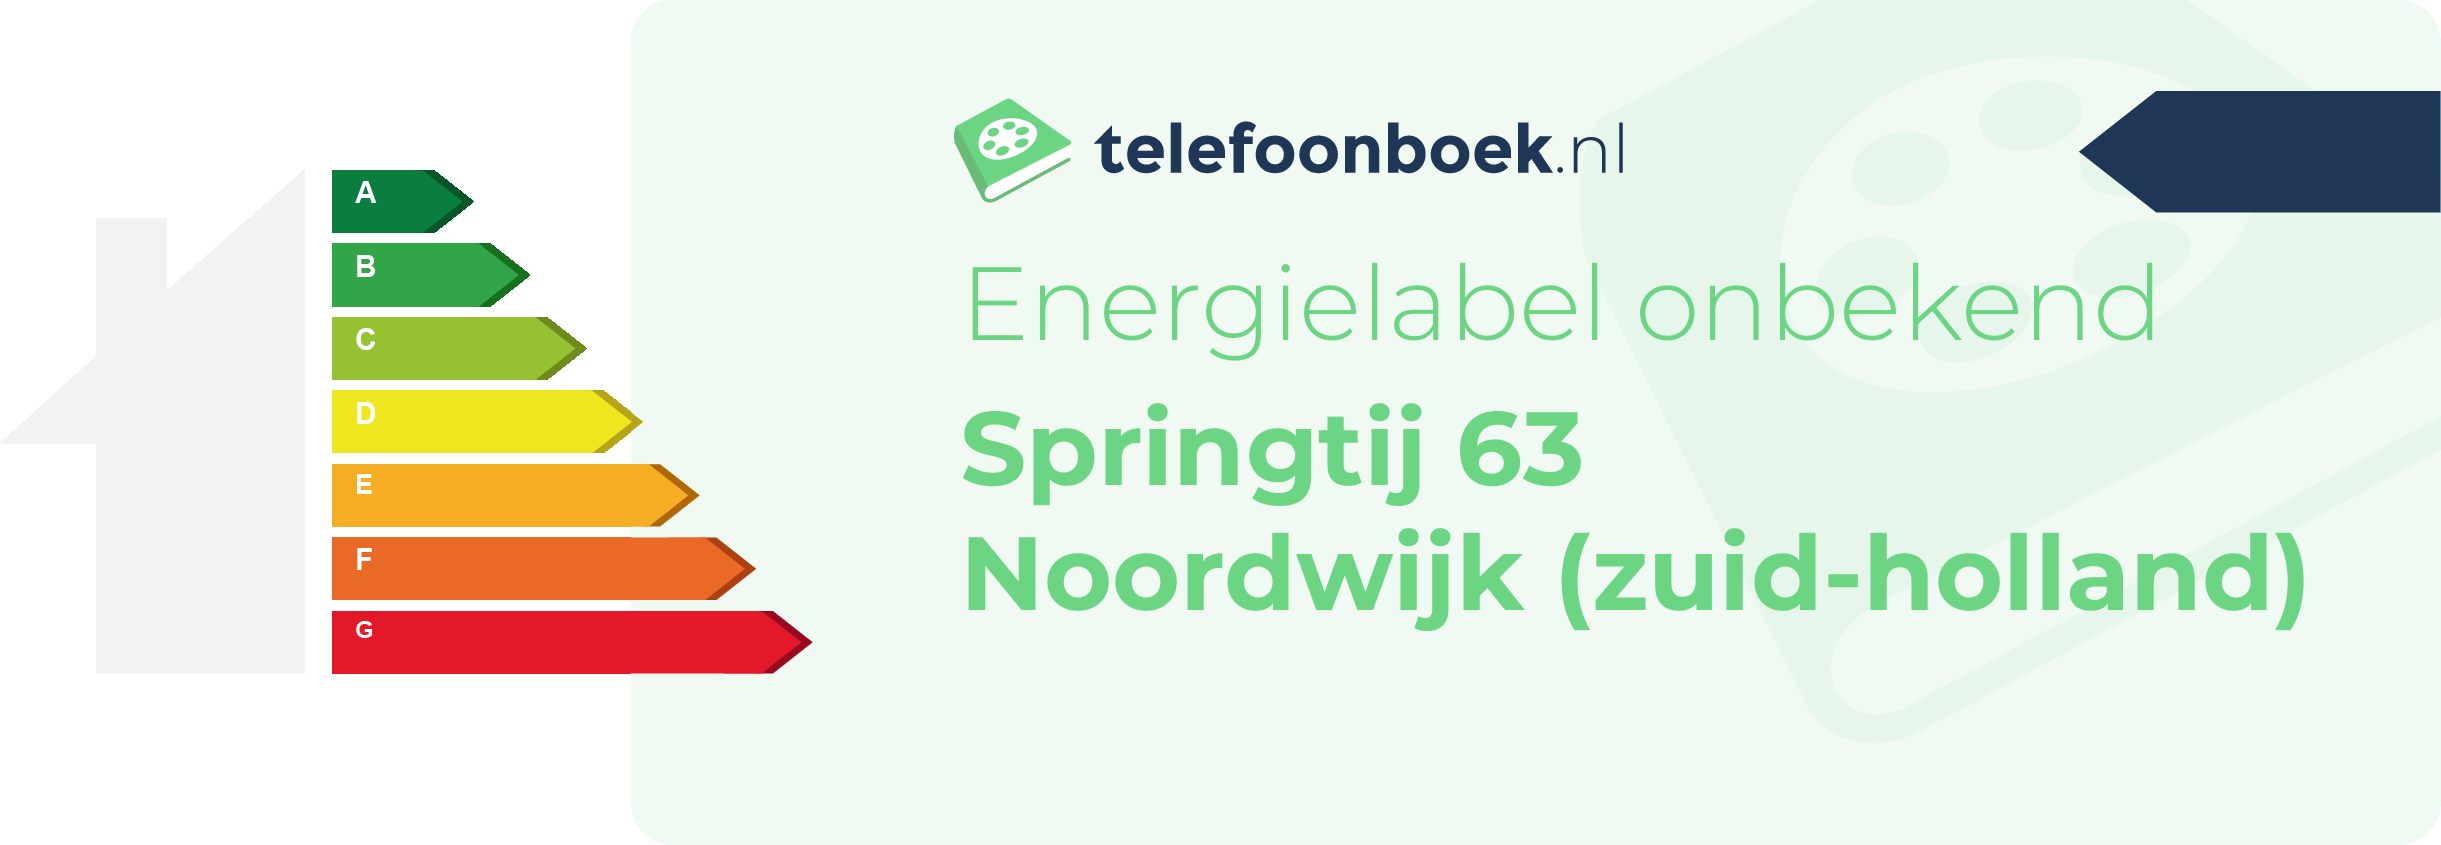 Energielabel Springtij 63 Noordwijk (Zuid-Holland)